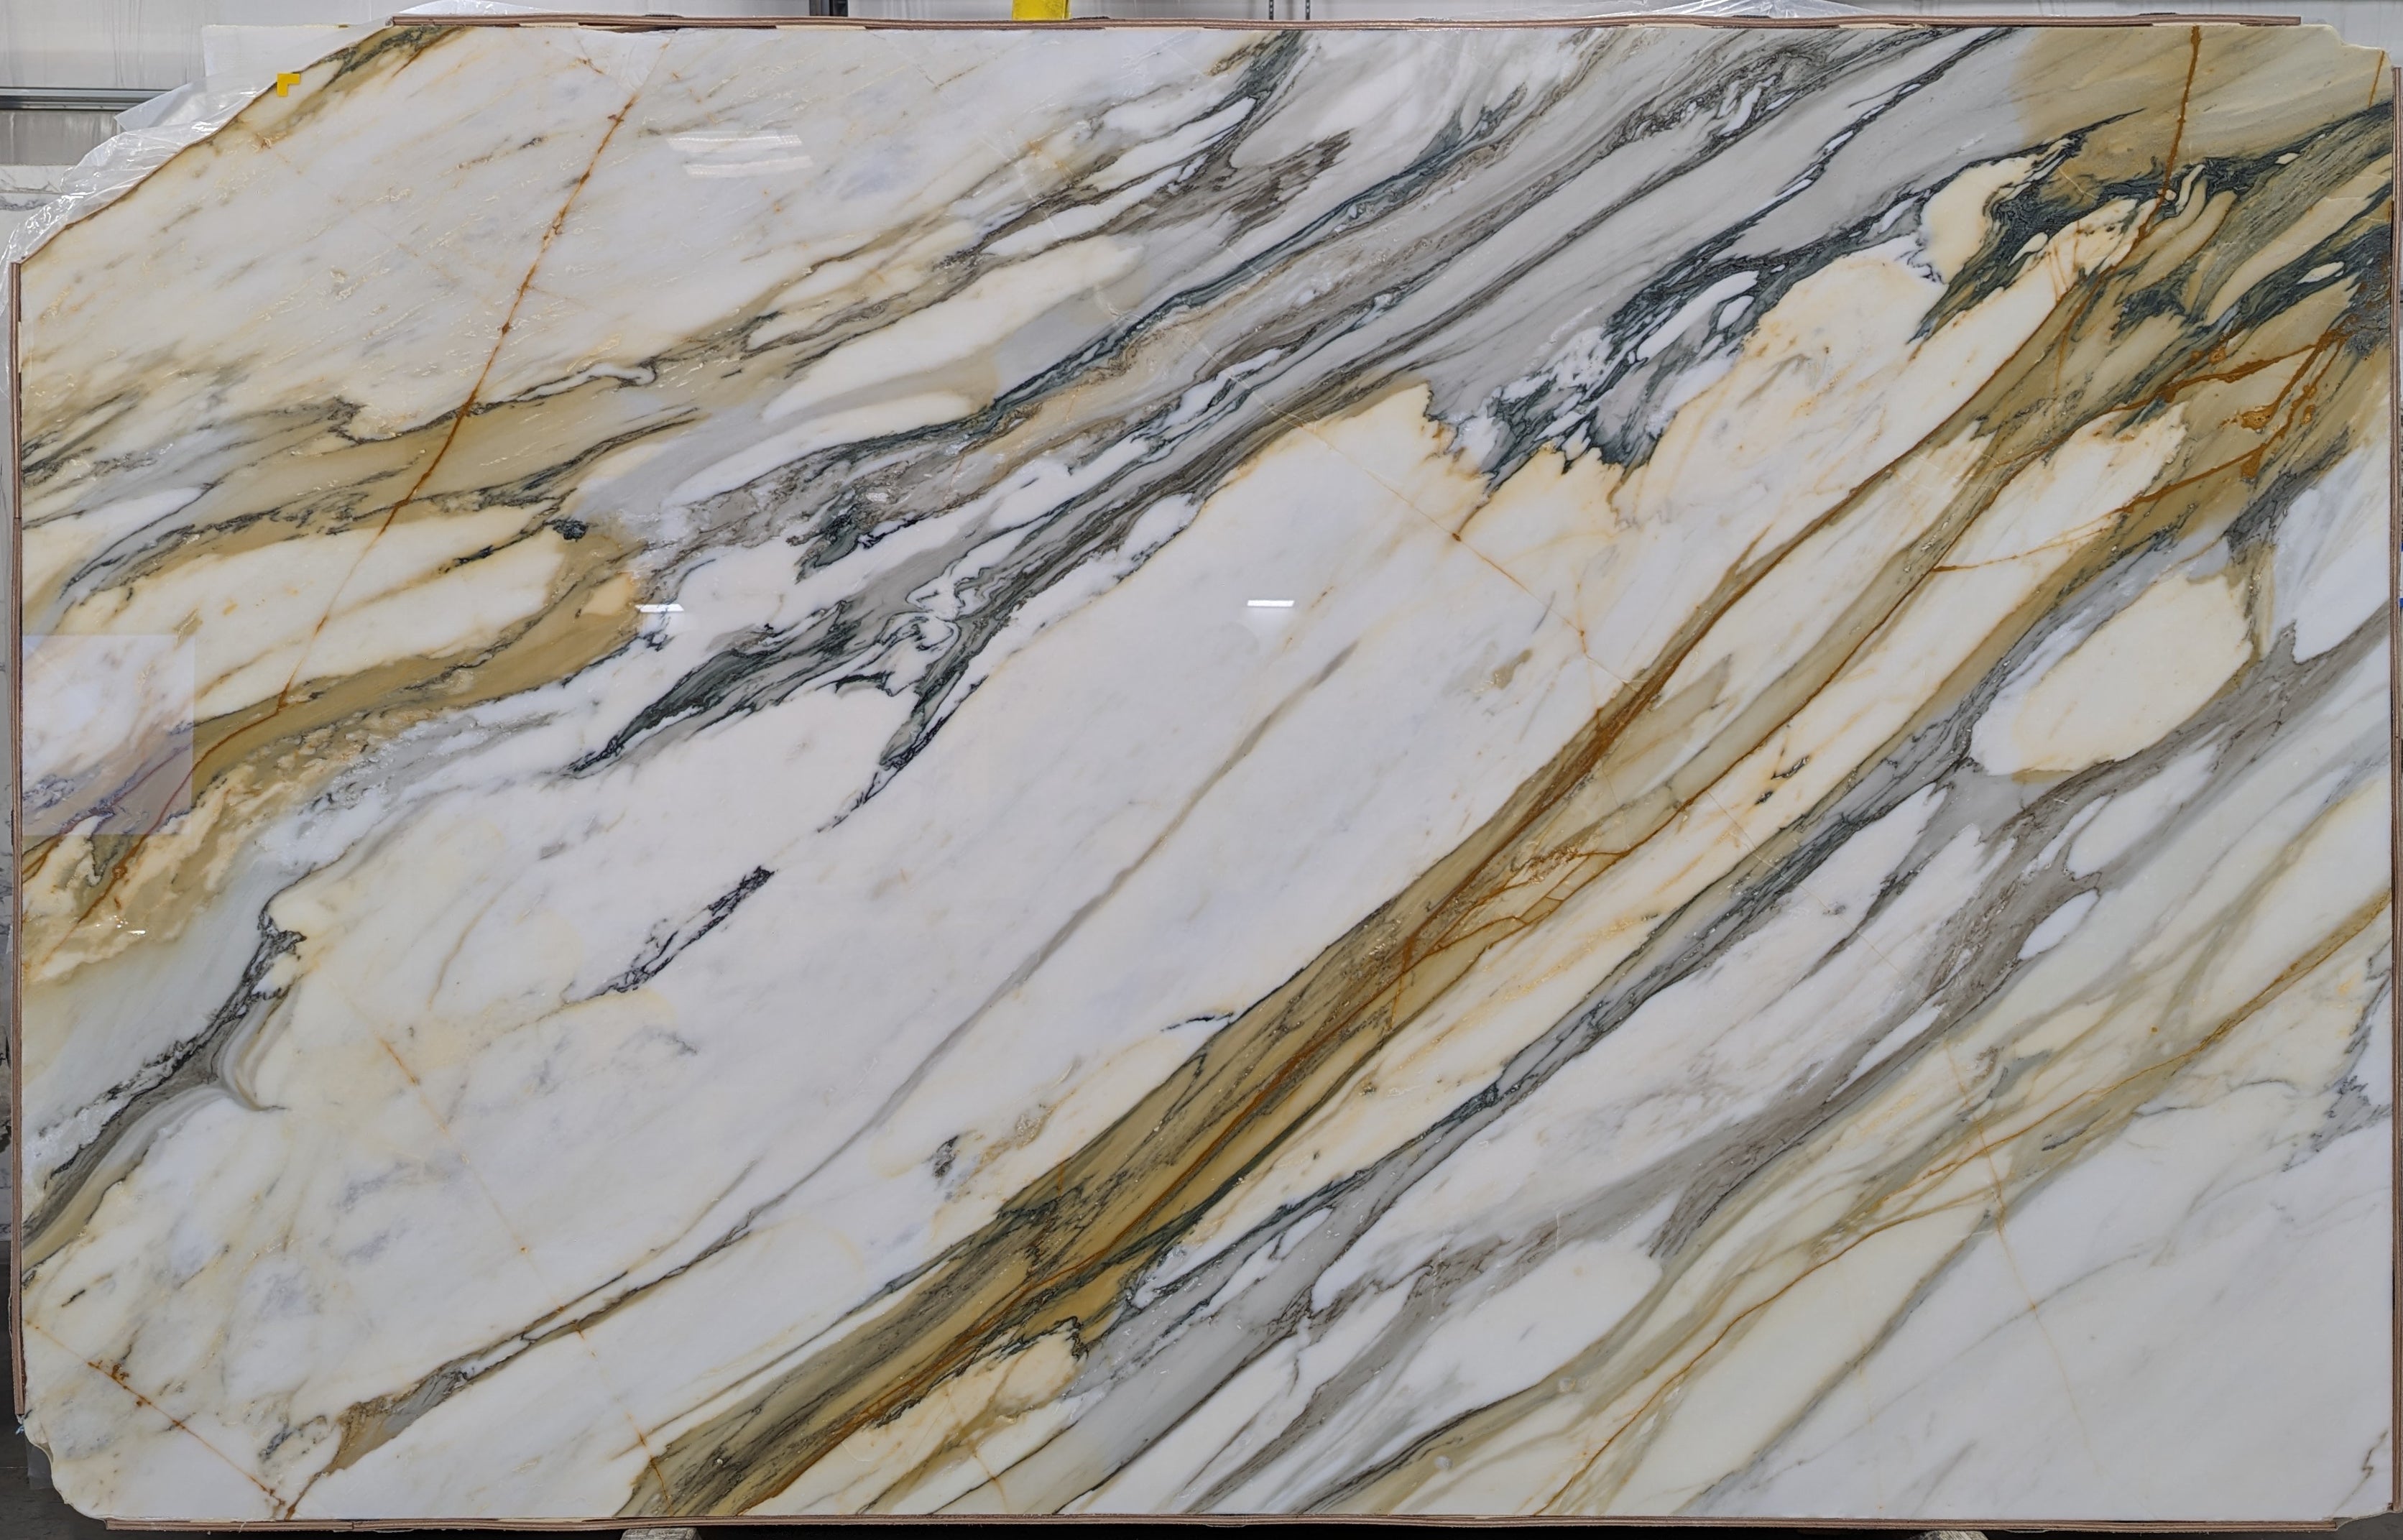  Calacatta Macchia Vecchia Marble Slab 3/4 - 26095#46 -  70x102 